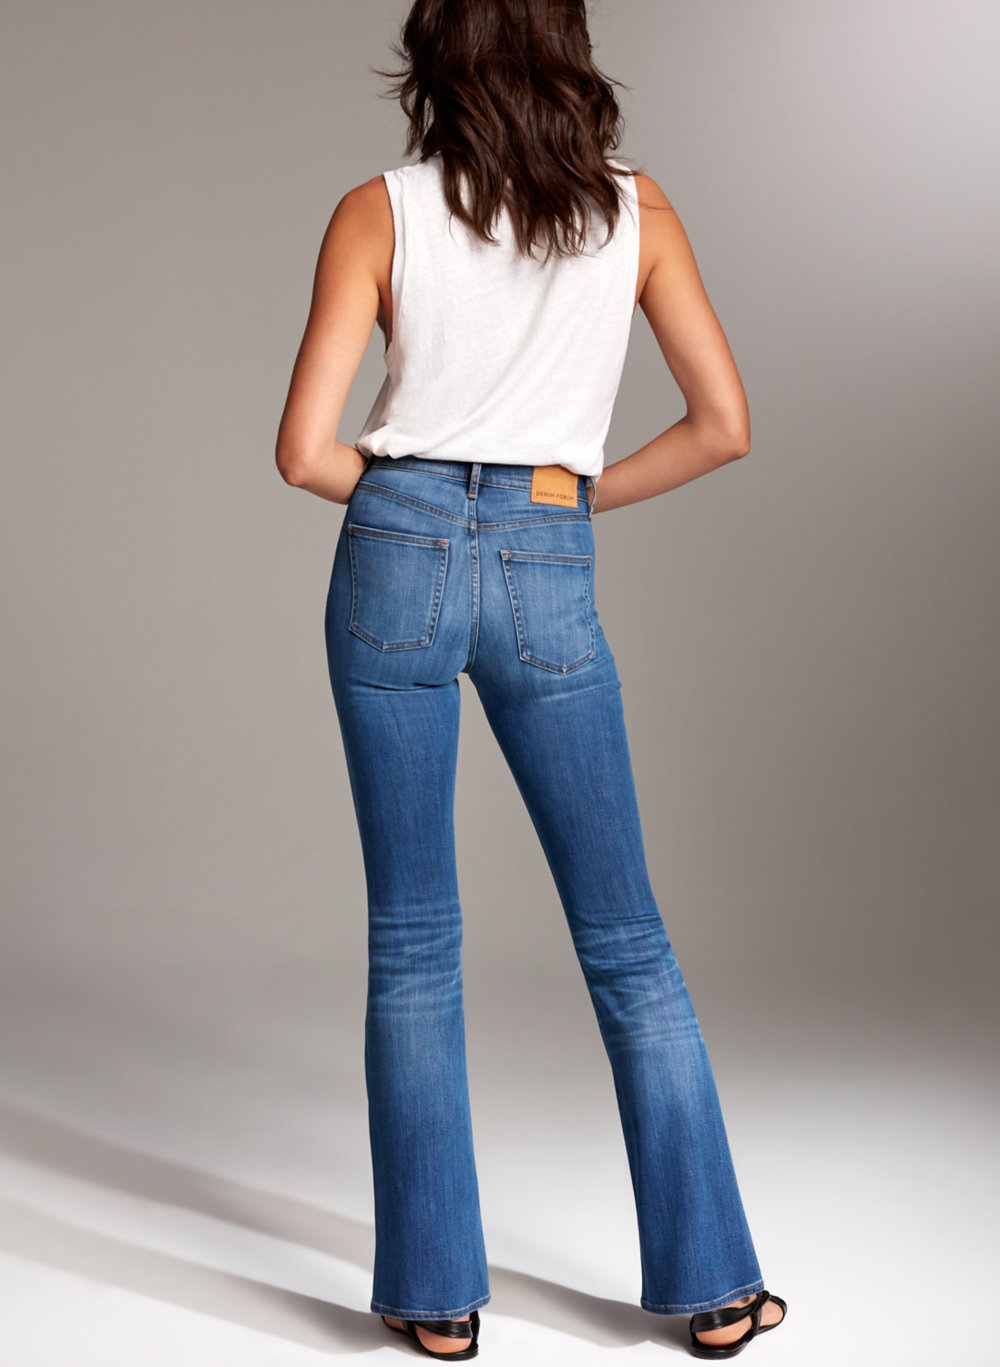 denim forum jeans